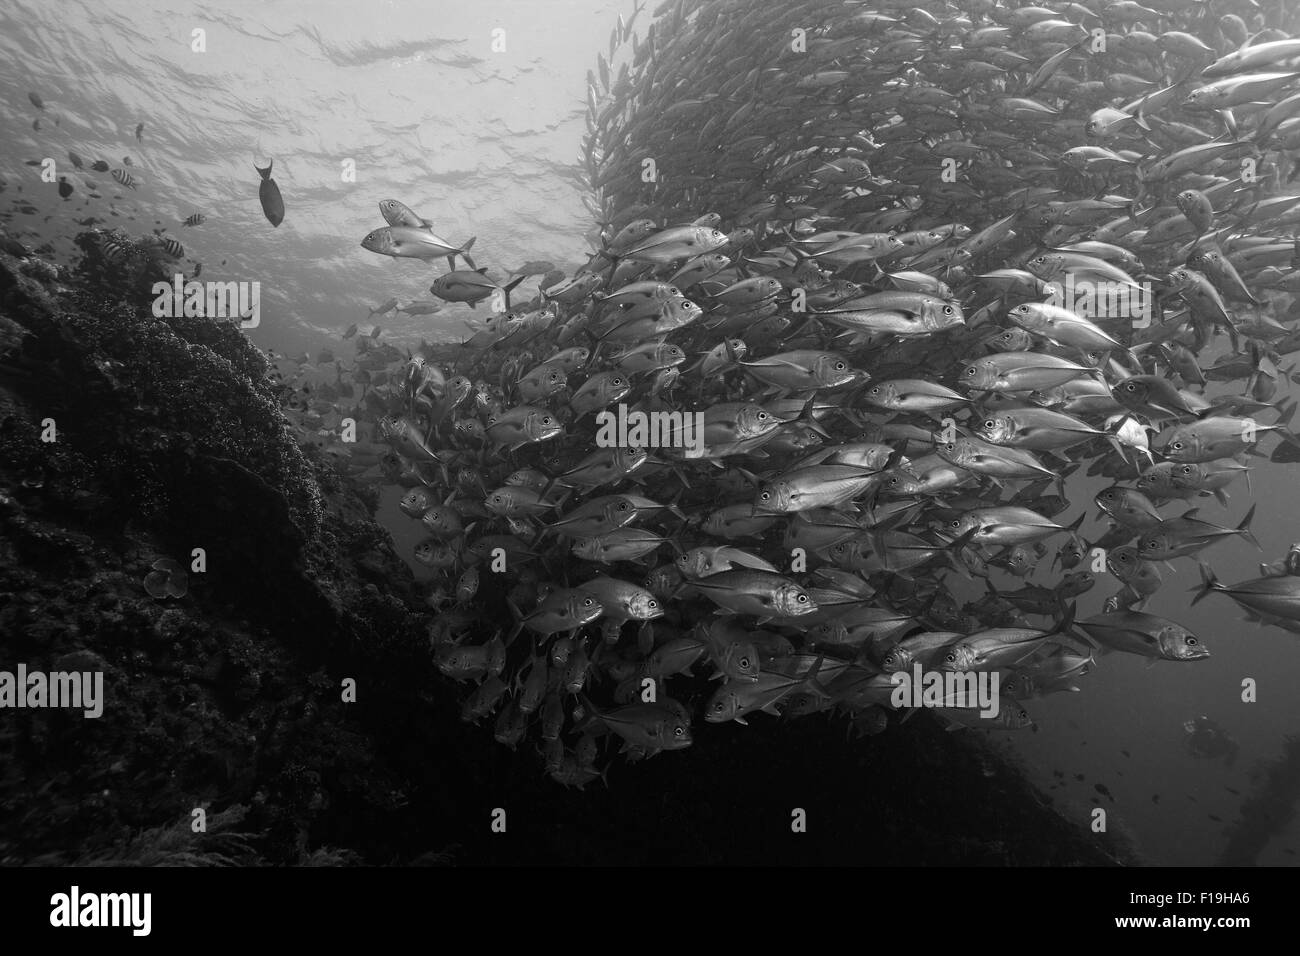 Px1032-D. Les prises de thon obèse (Caranx sexfasciatus) sur le naufrage de la liberté. Tulamben, Bali. L'Indonésie, de l'océan Pacifique tropical. Banque D'Images